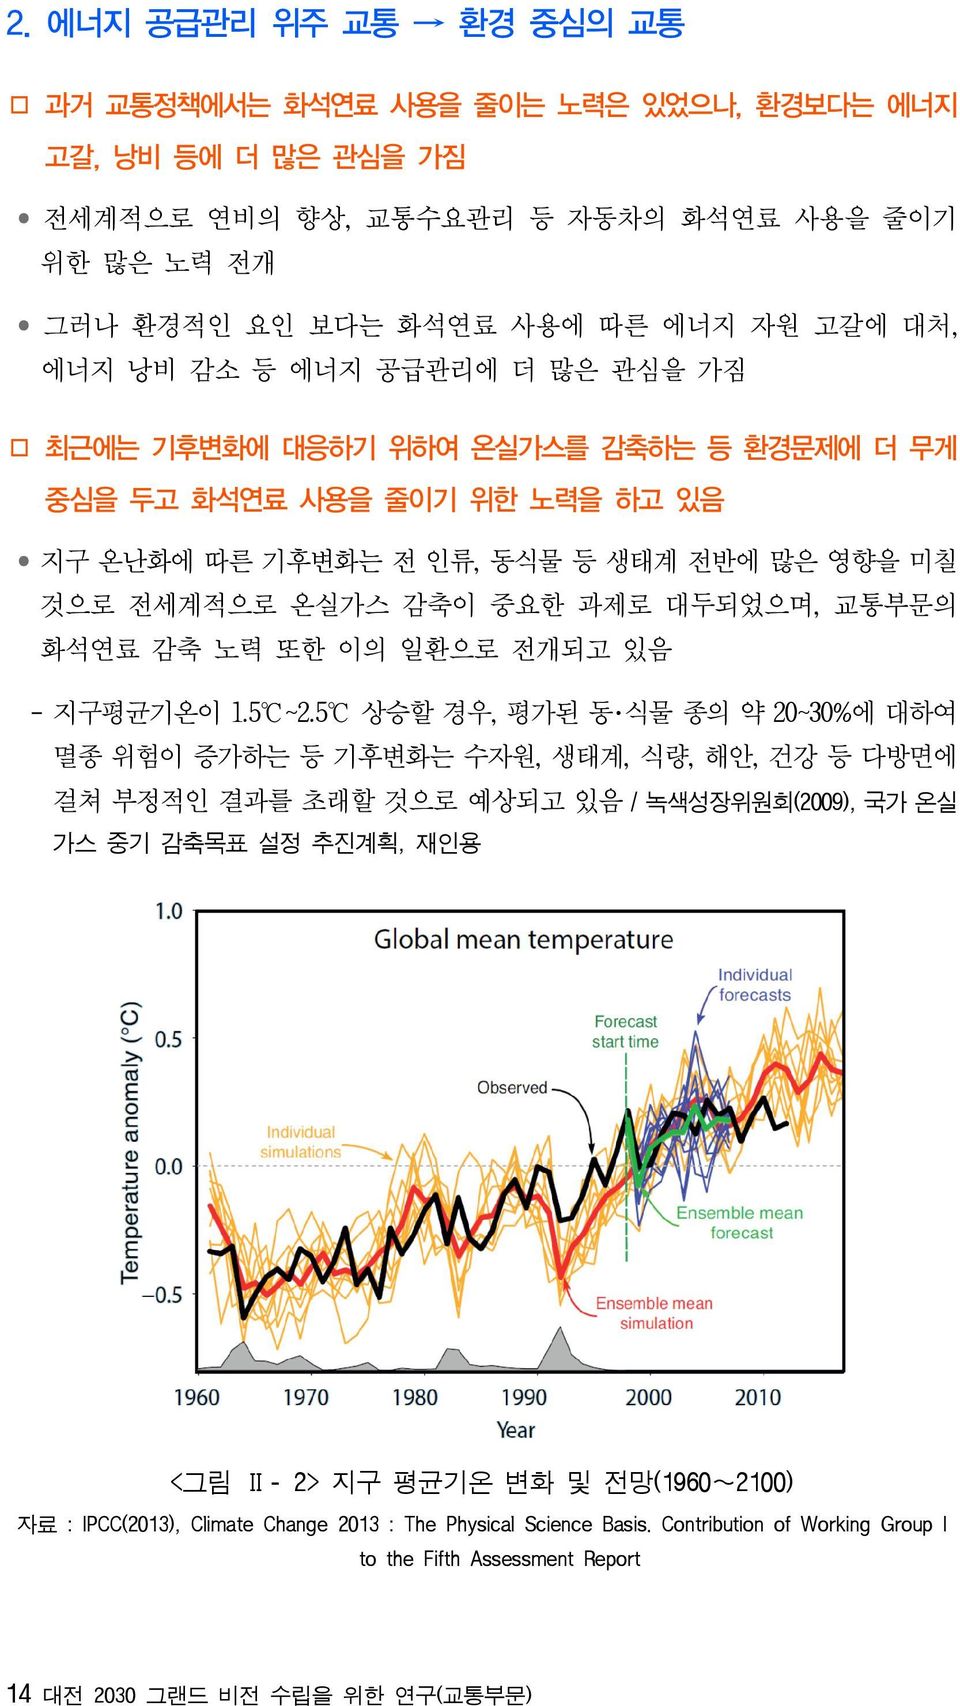 감축 노력 또한 이의 일환으로 전개되고 있음 - 지구평균기온이 1.5 ~2.